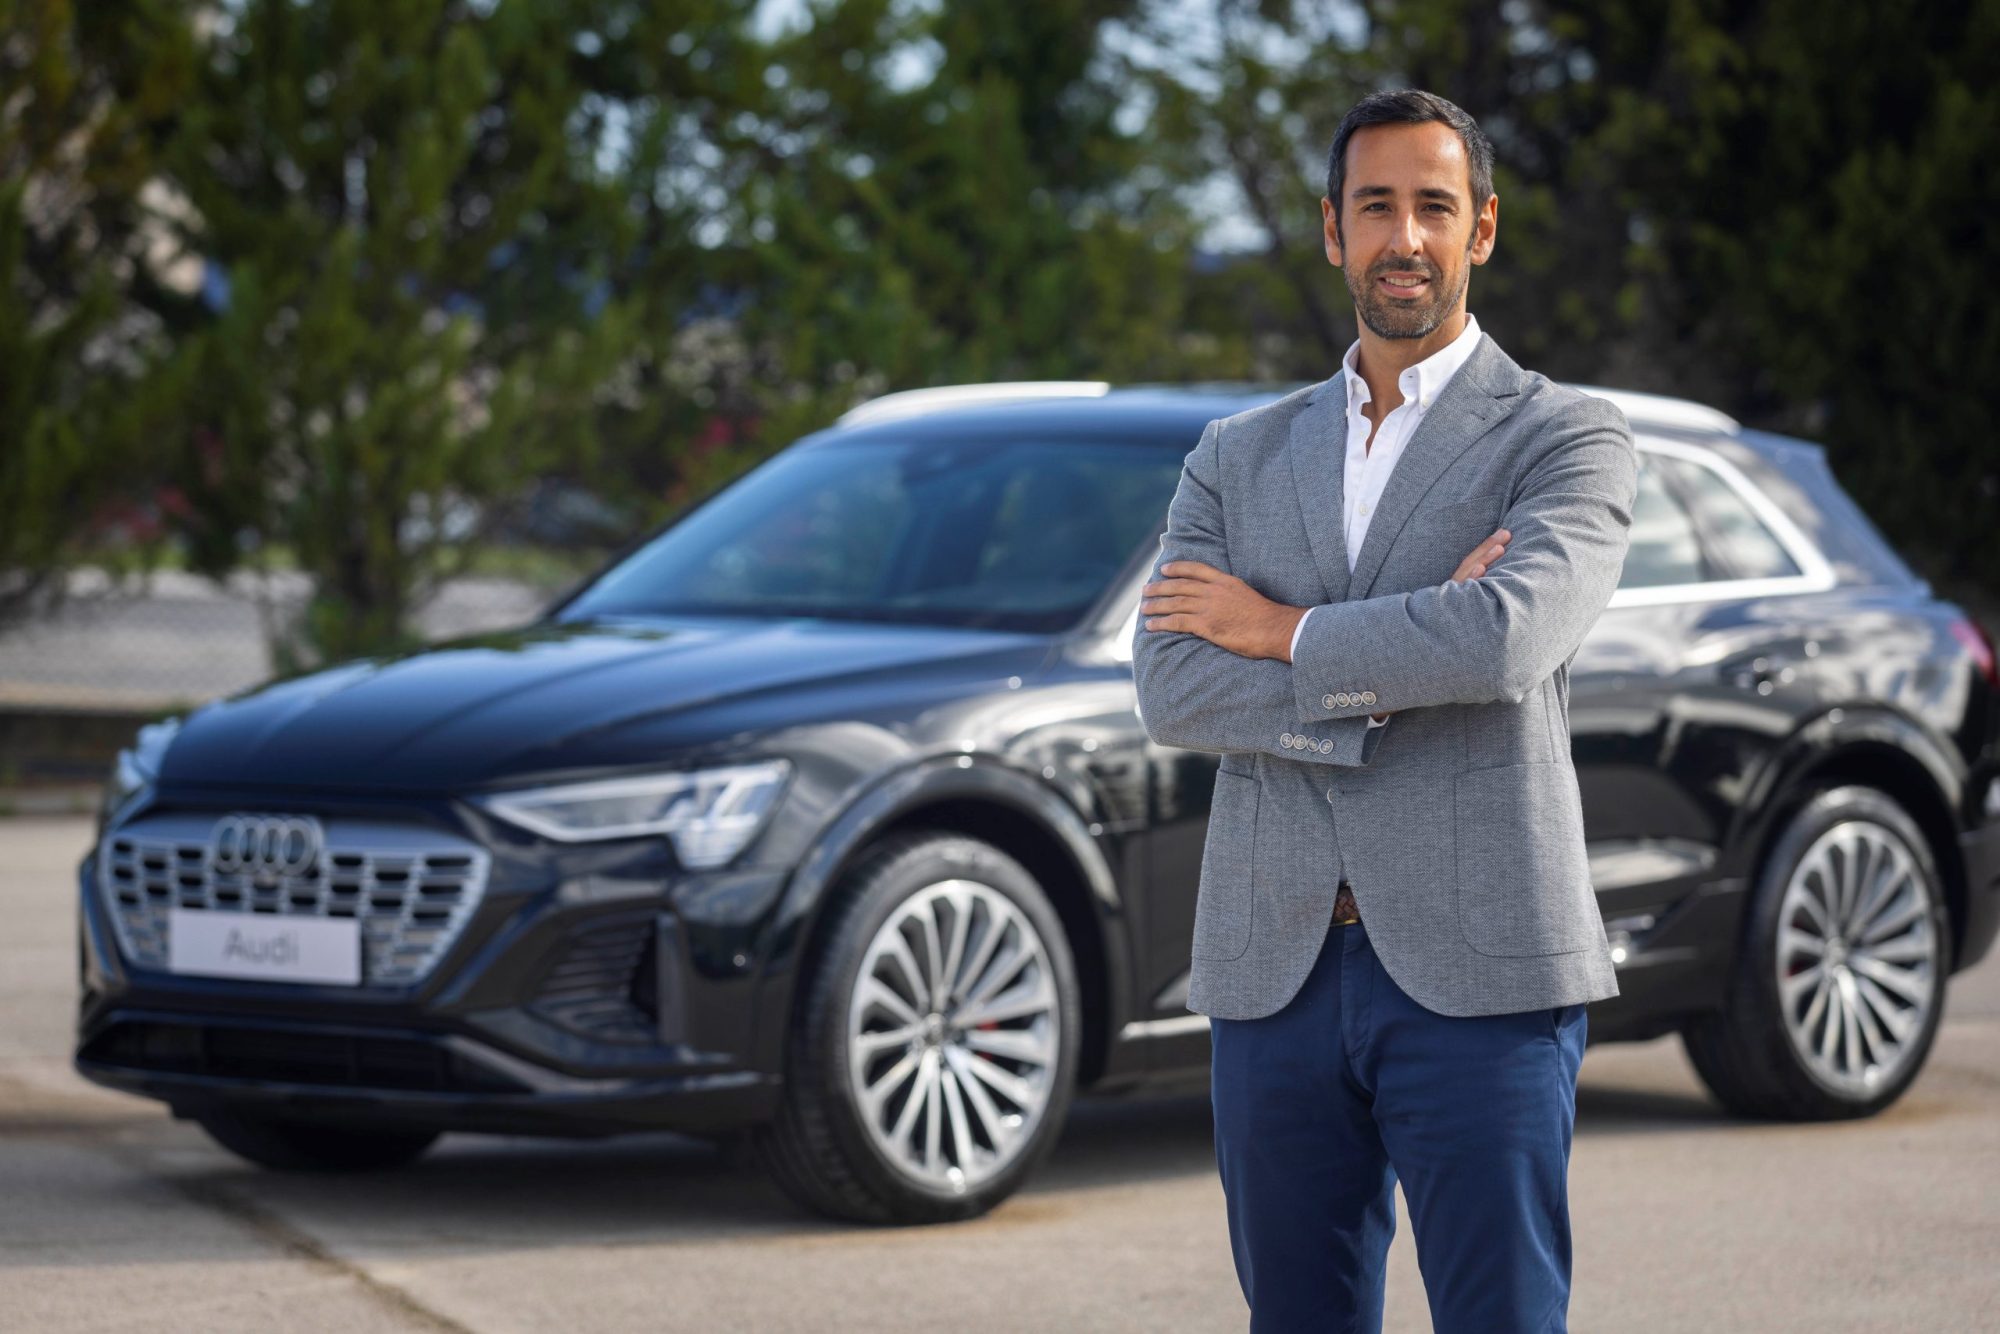 Audi em Portugal tem novo Diretor de Marketing